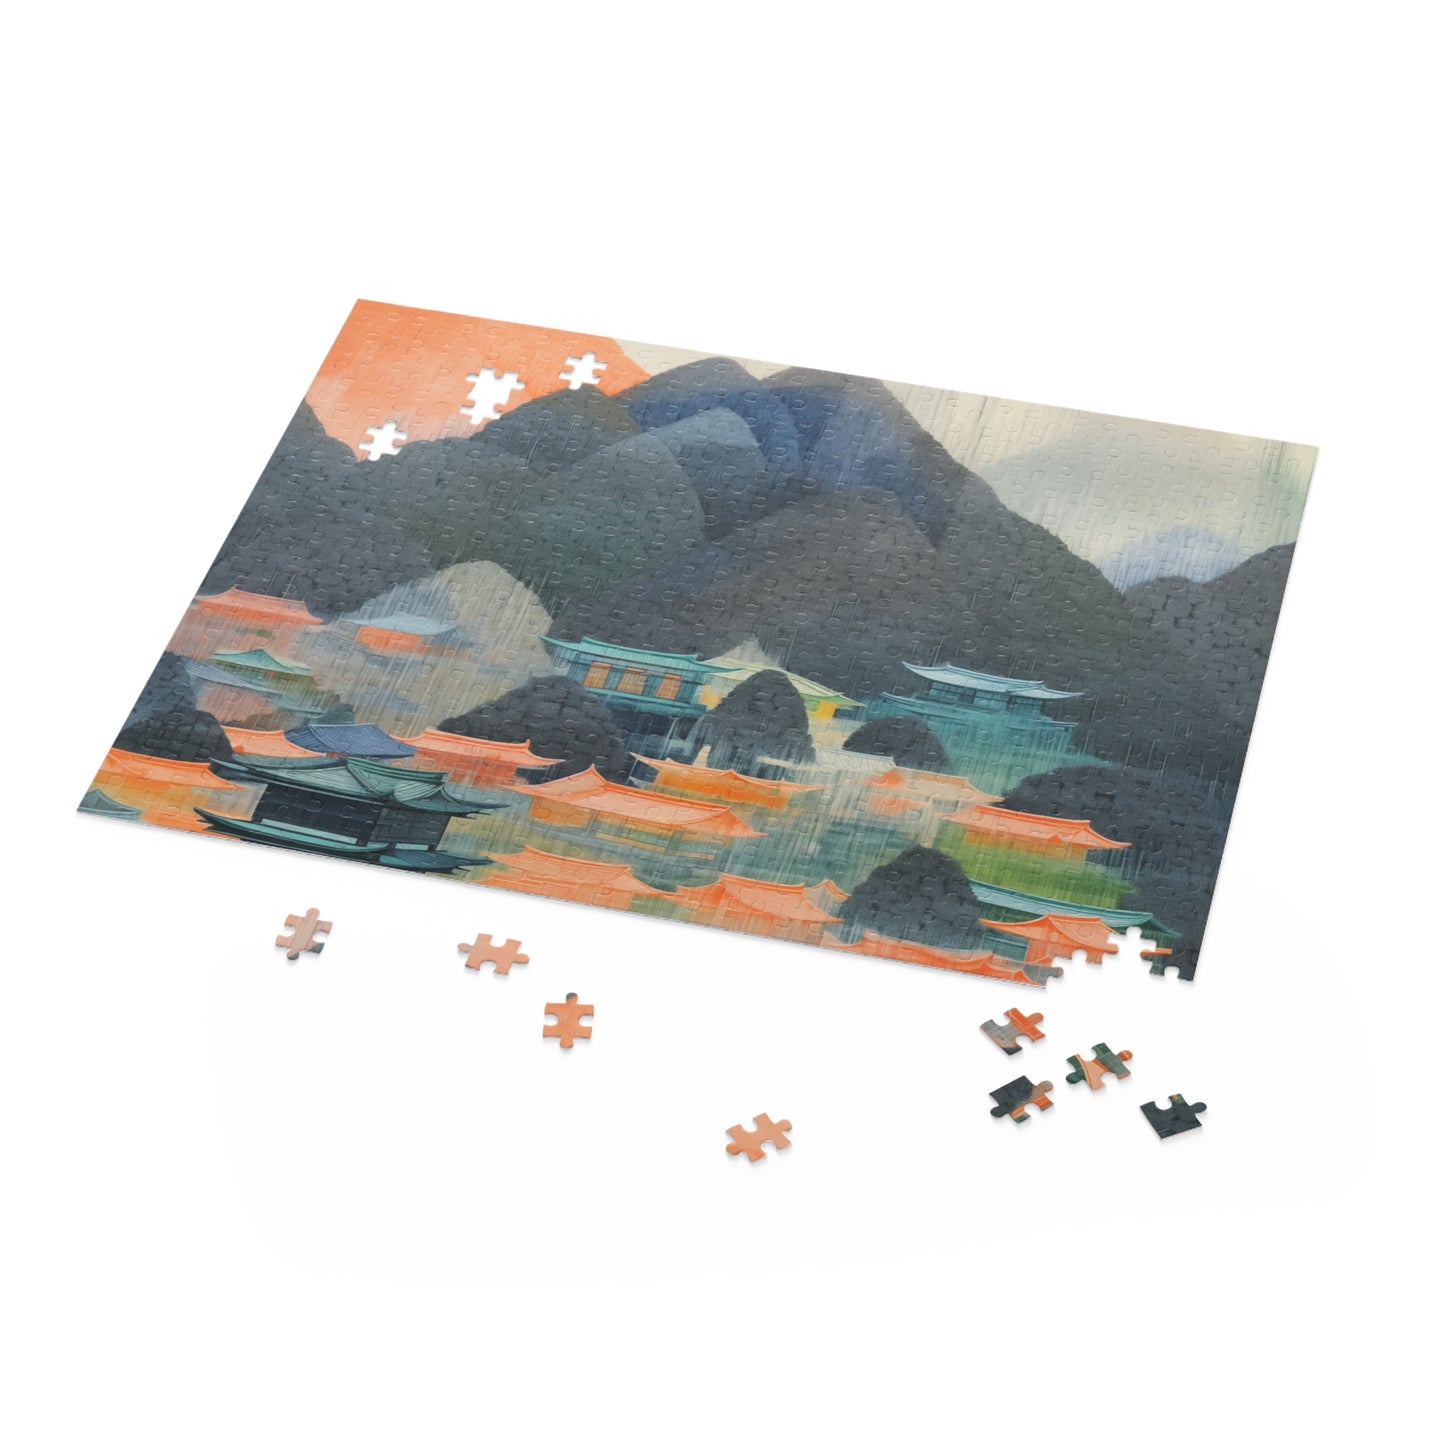 Japanese Landscape Art Jigsaw Puzzle 500-Piece